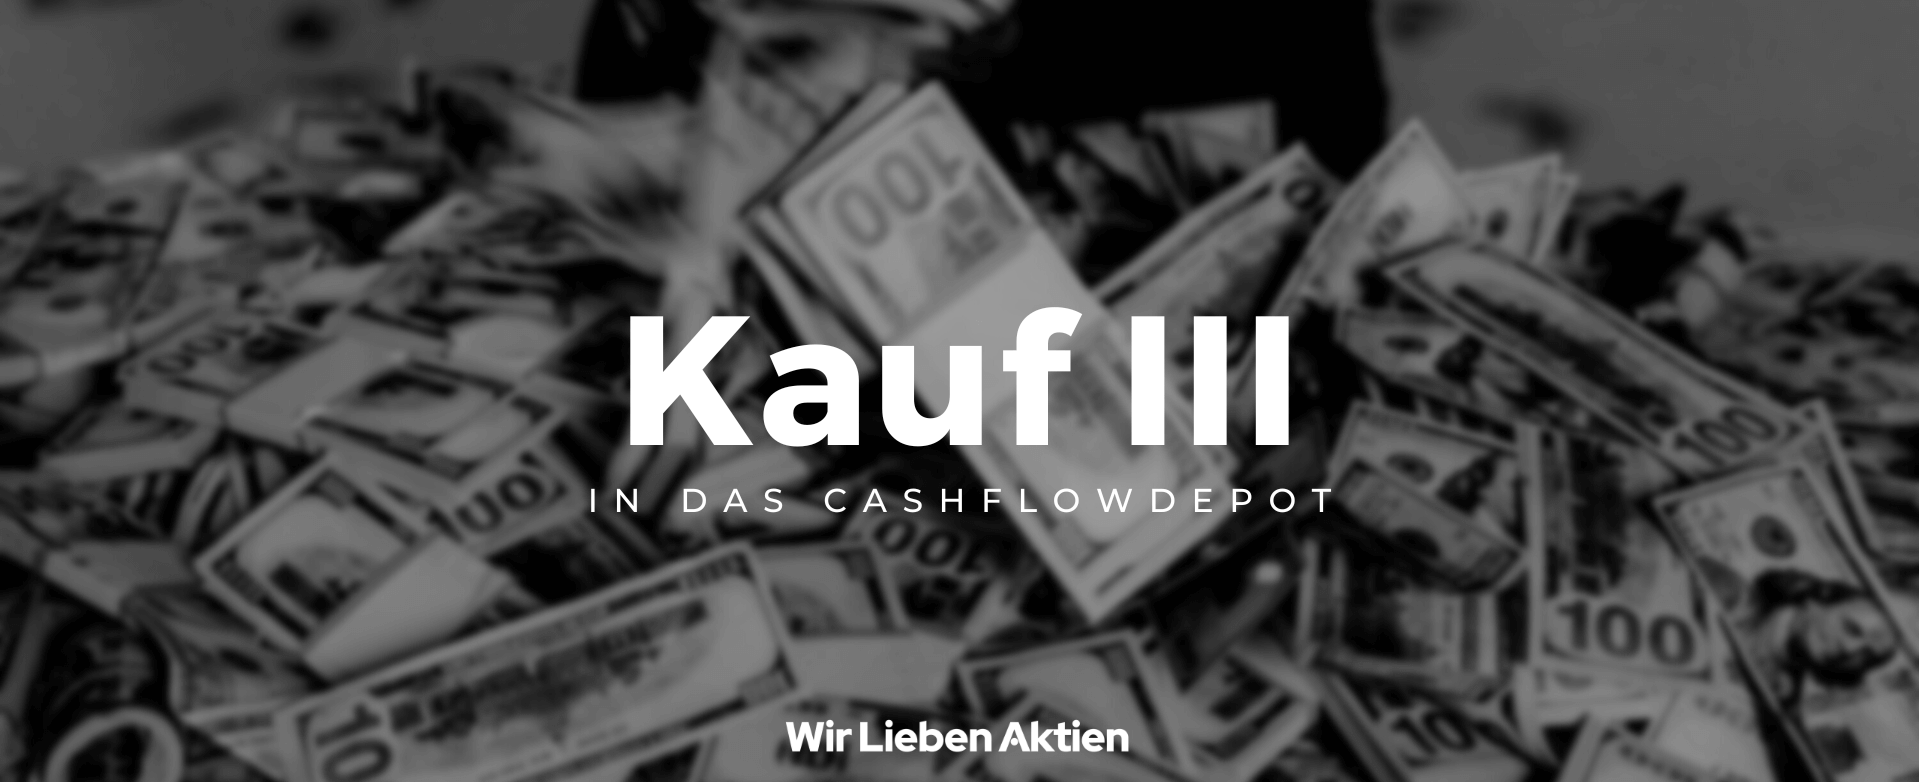 Cashflowdepot - Kauf 03